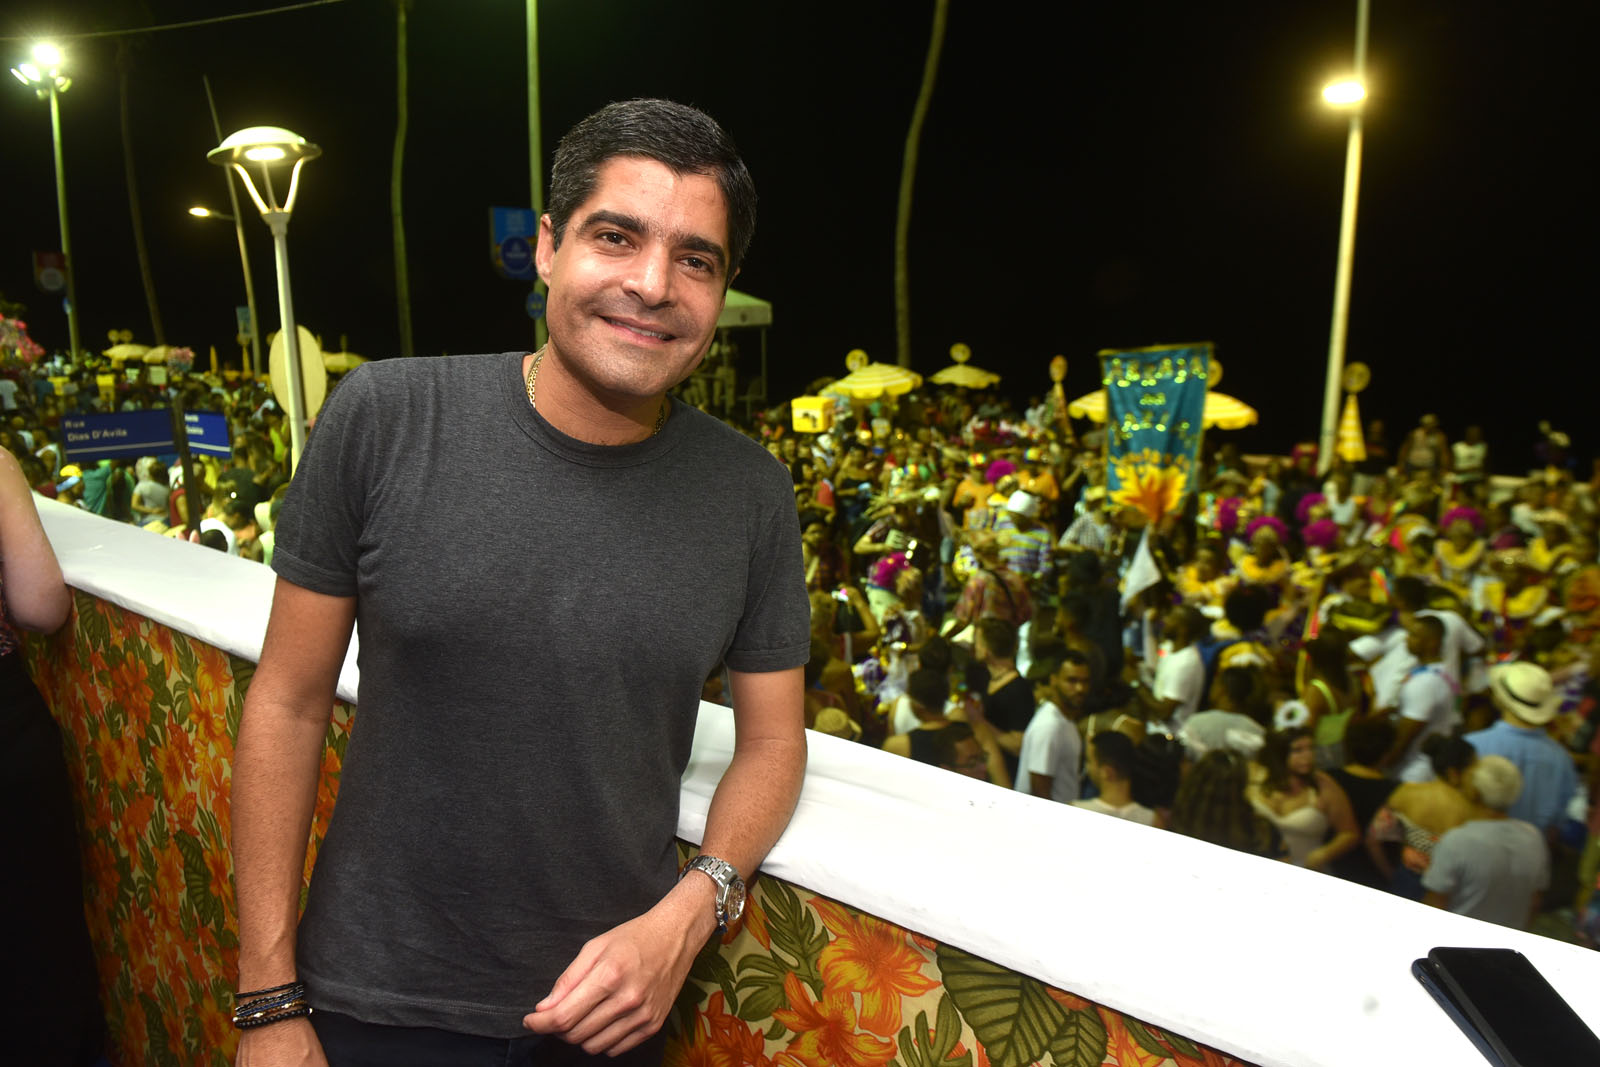 Salvador deverá ter “o melhor Carnaval de todos os tempos”, afirma prefeito